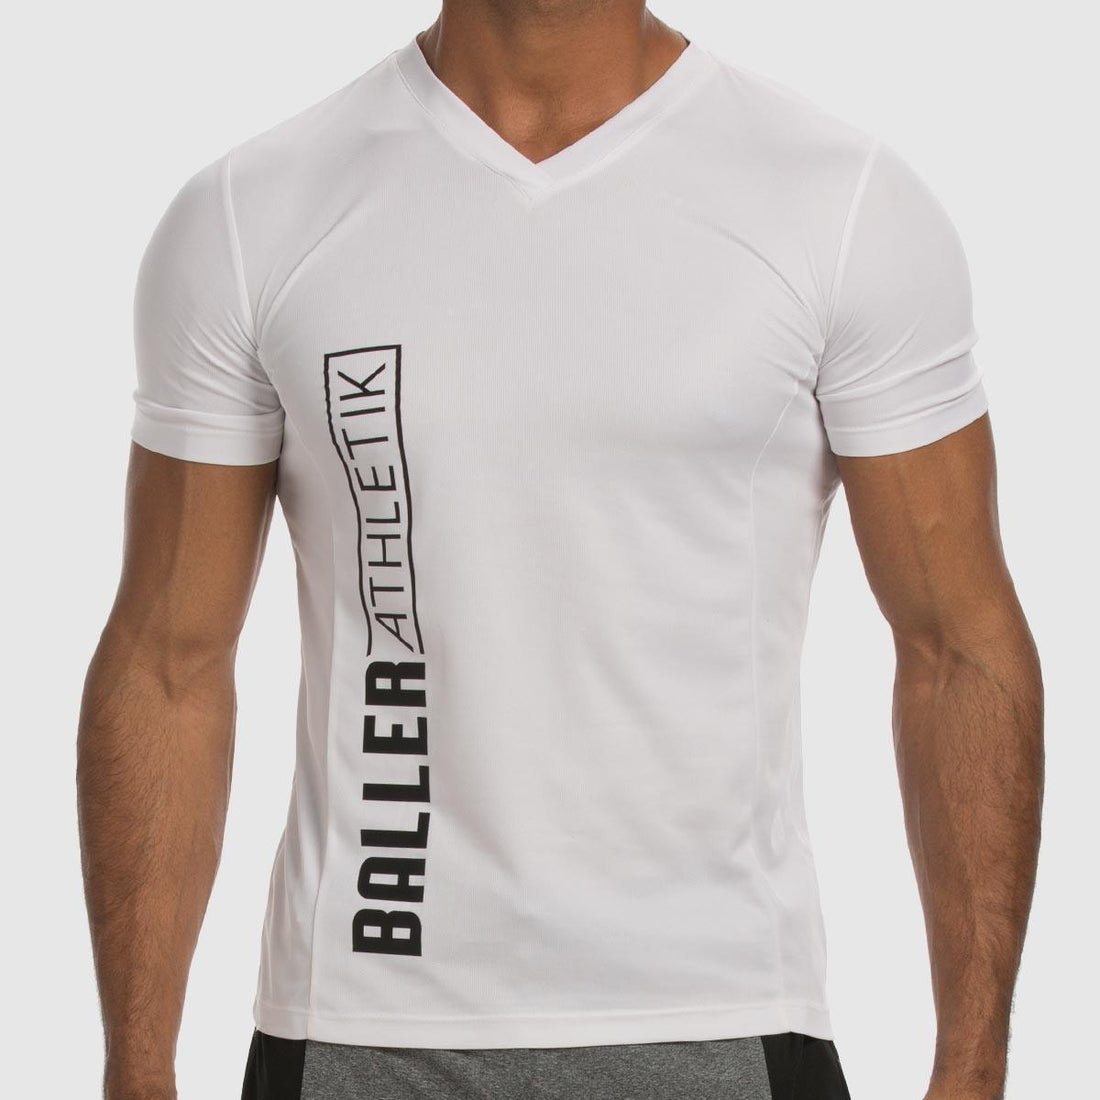 White V Neck T Shirt Mens for Men